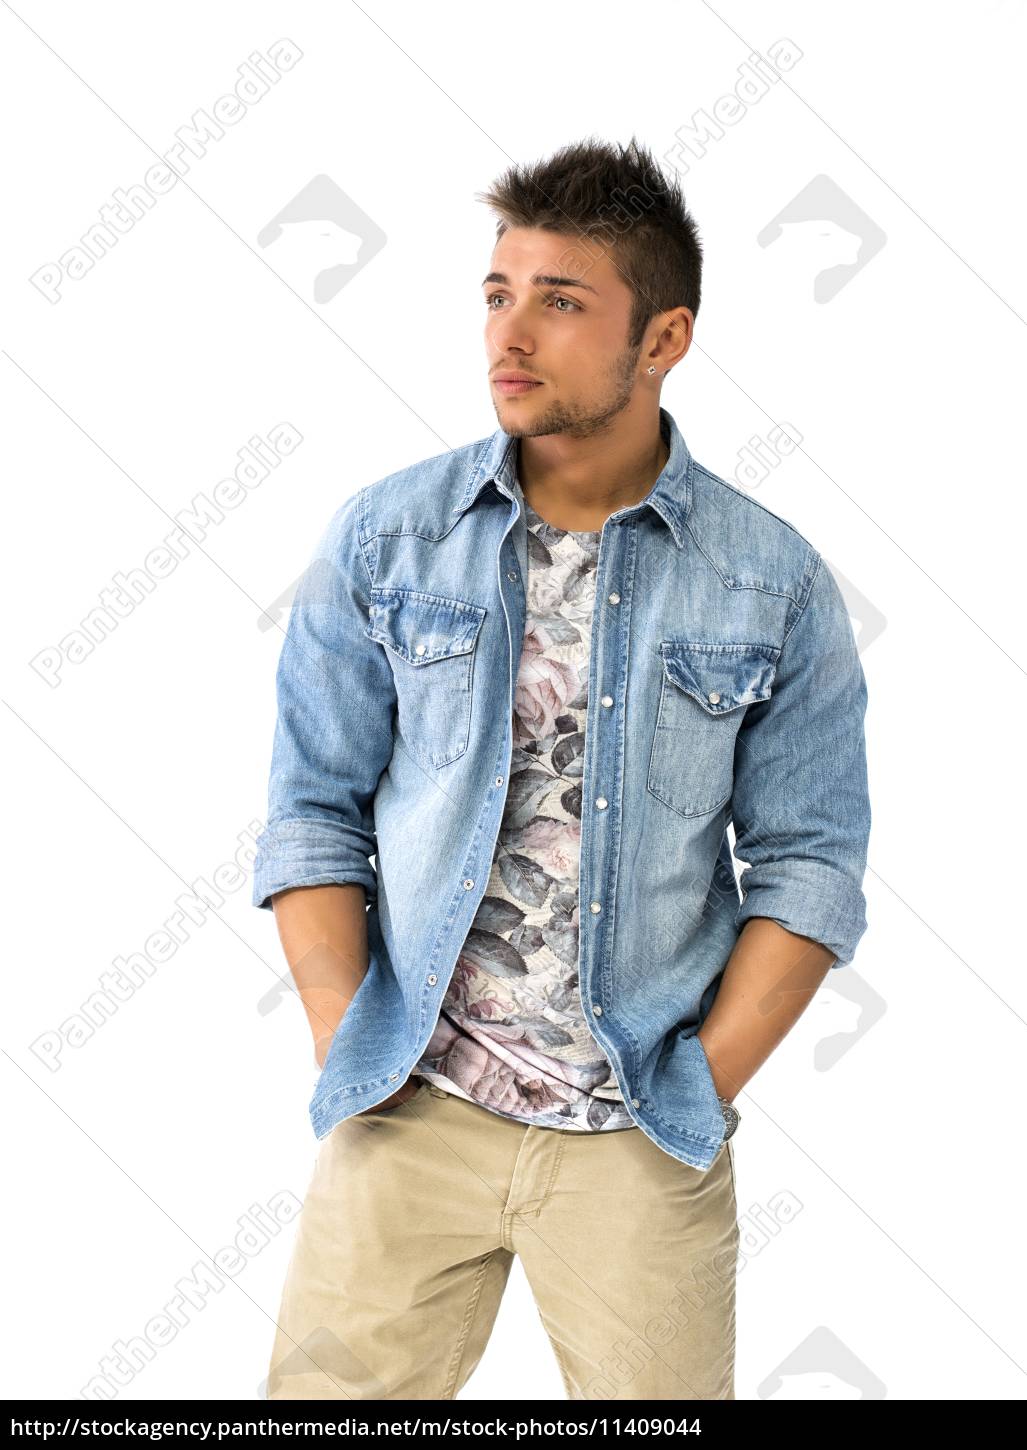 Fremragende sløjfe konstant Smuk ung mand stående med åben denim skjorte - Stockphoto #11409044 |  PantherMedia Billedbureau